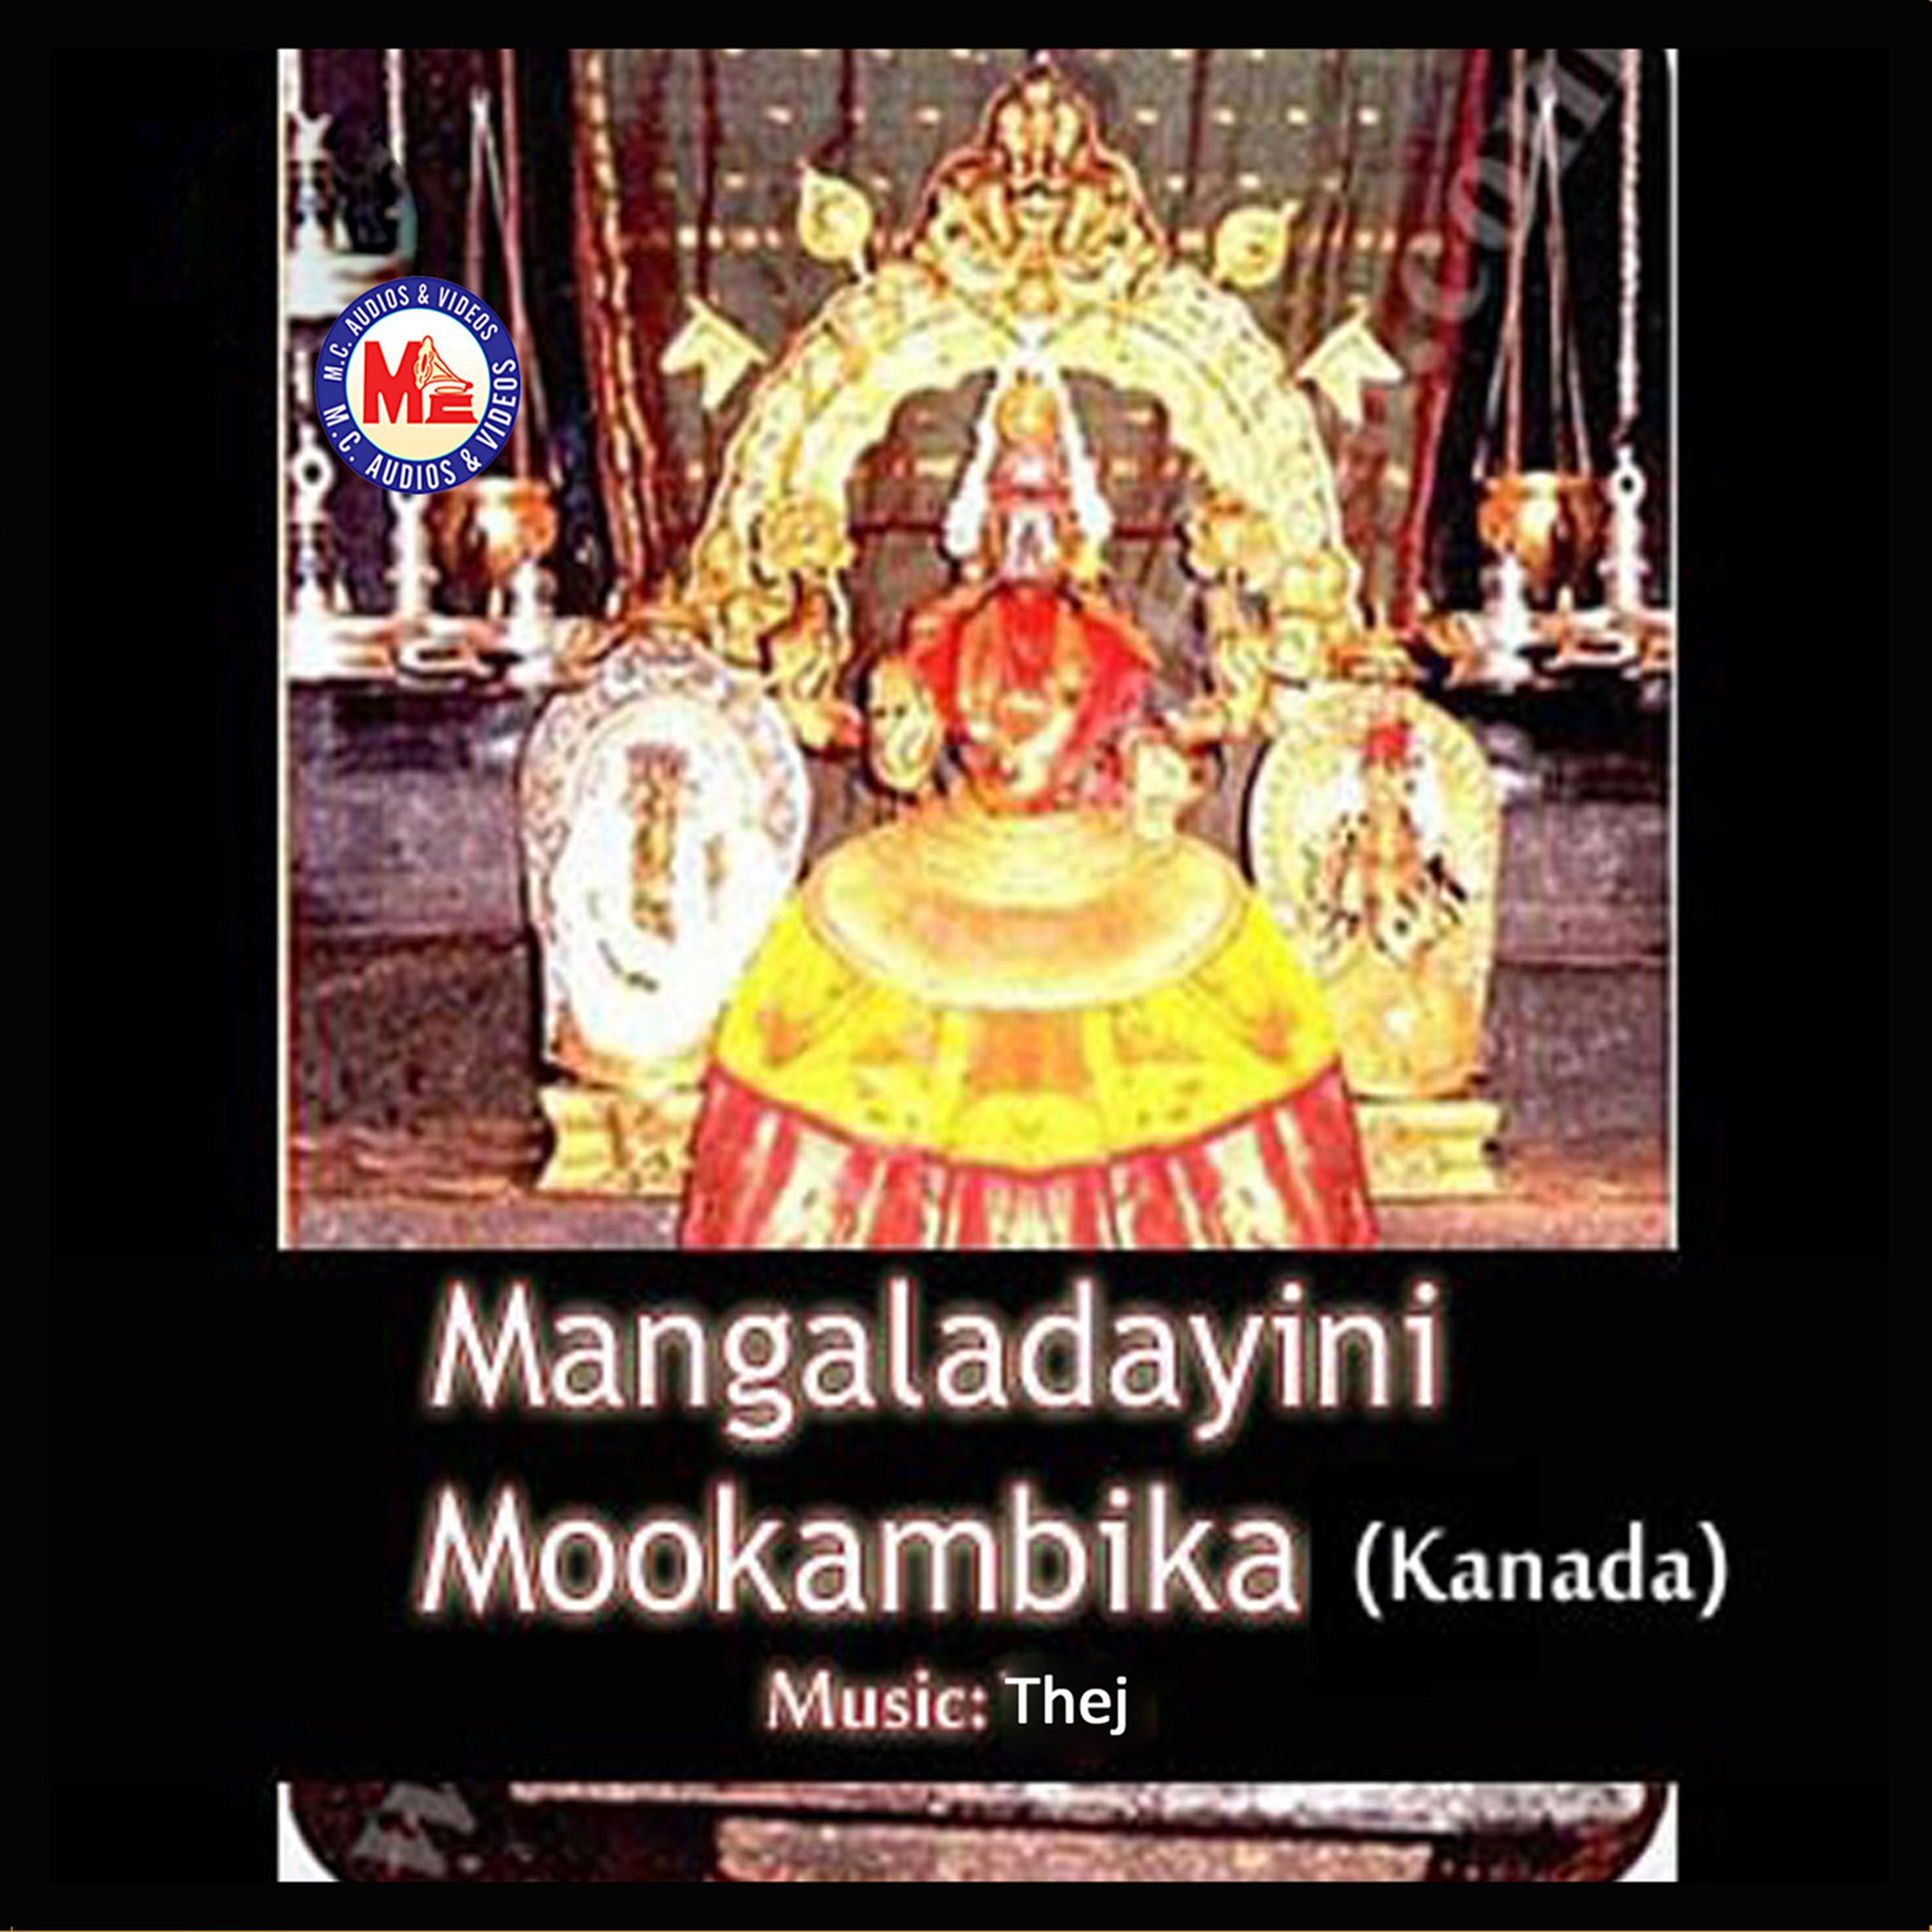 Mangaladayini Mookambika